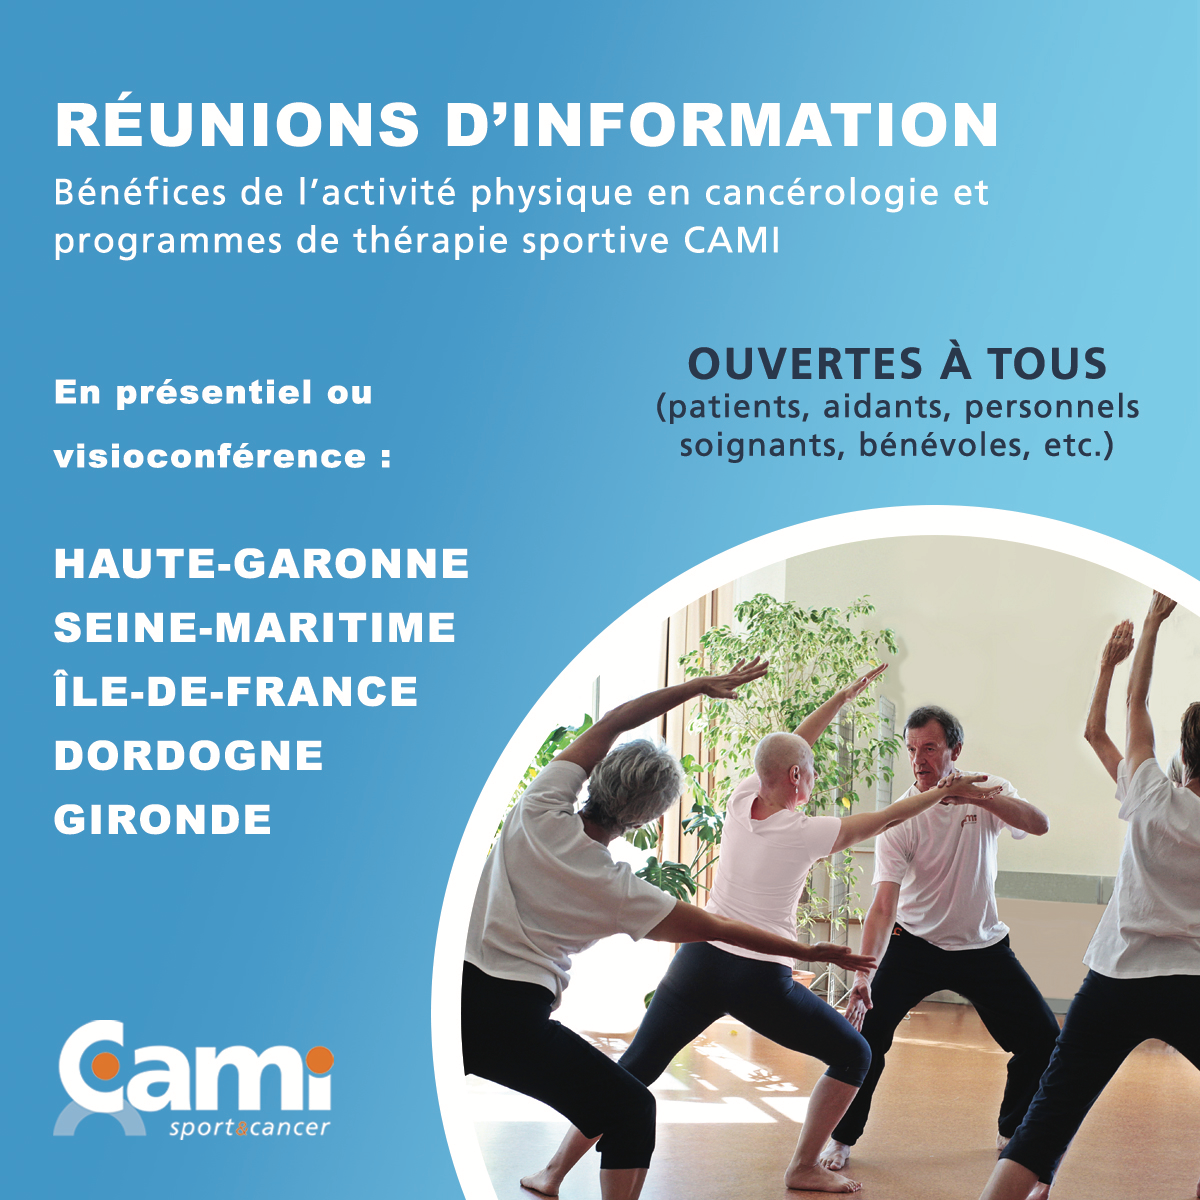 Réunions d'information : bénéfices de l'activité physique en cancérologie et programmes de thérapie sportive CAMI